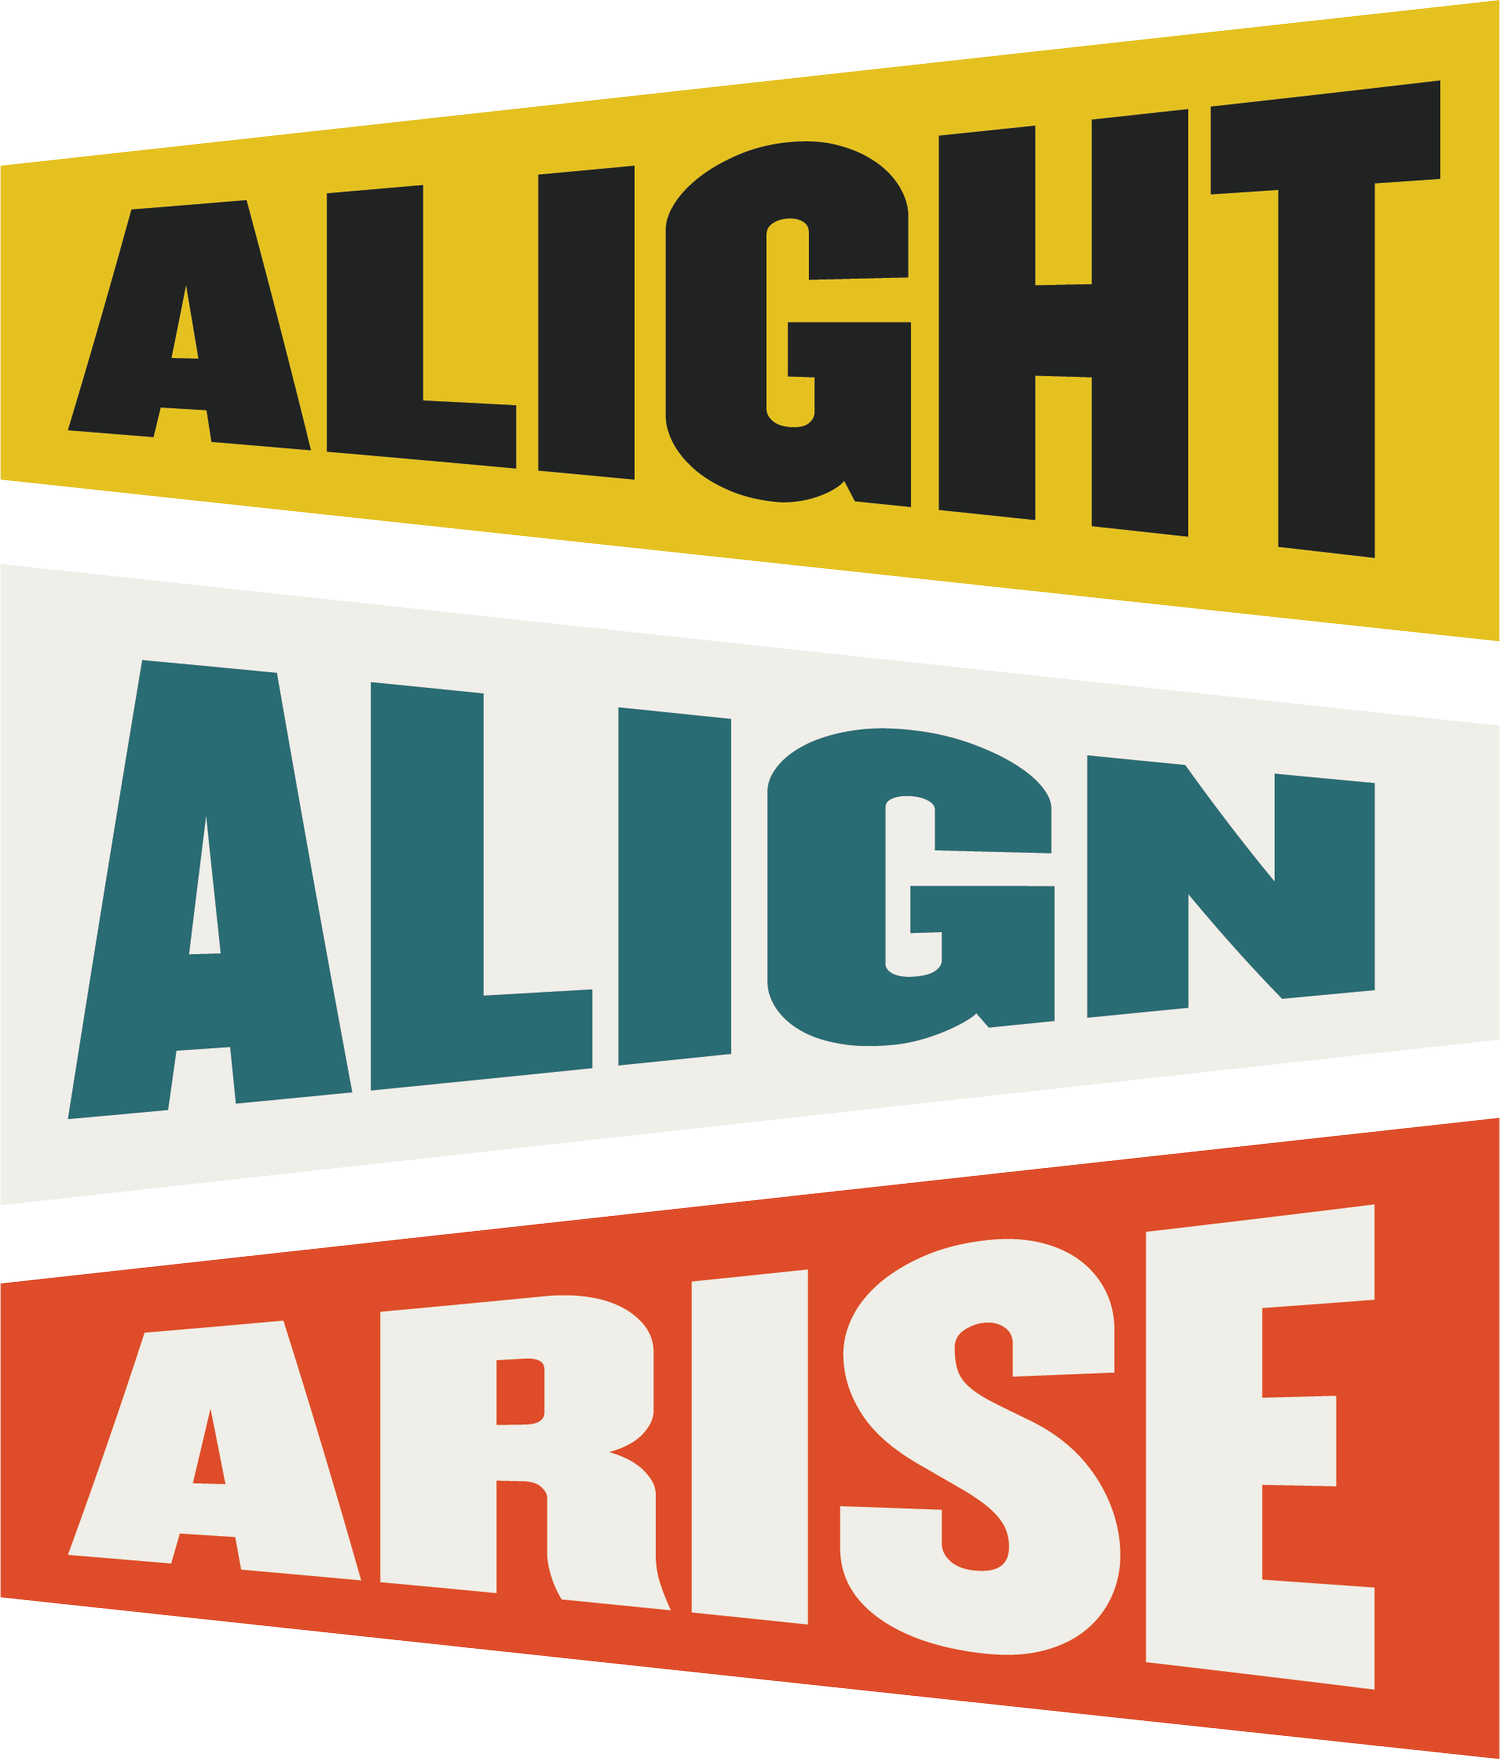 Alight Align Arise